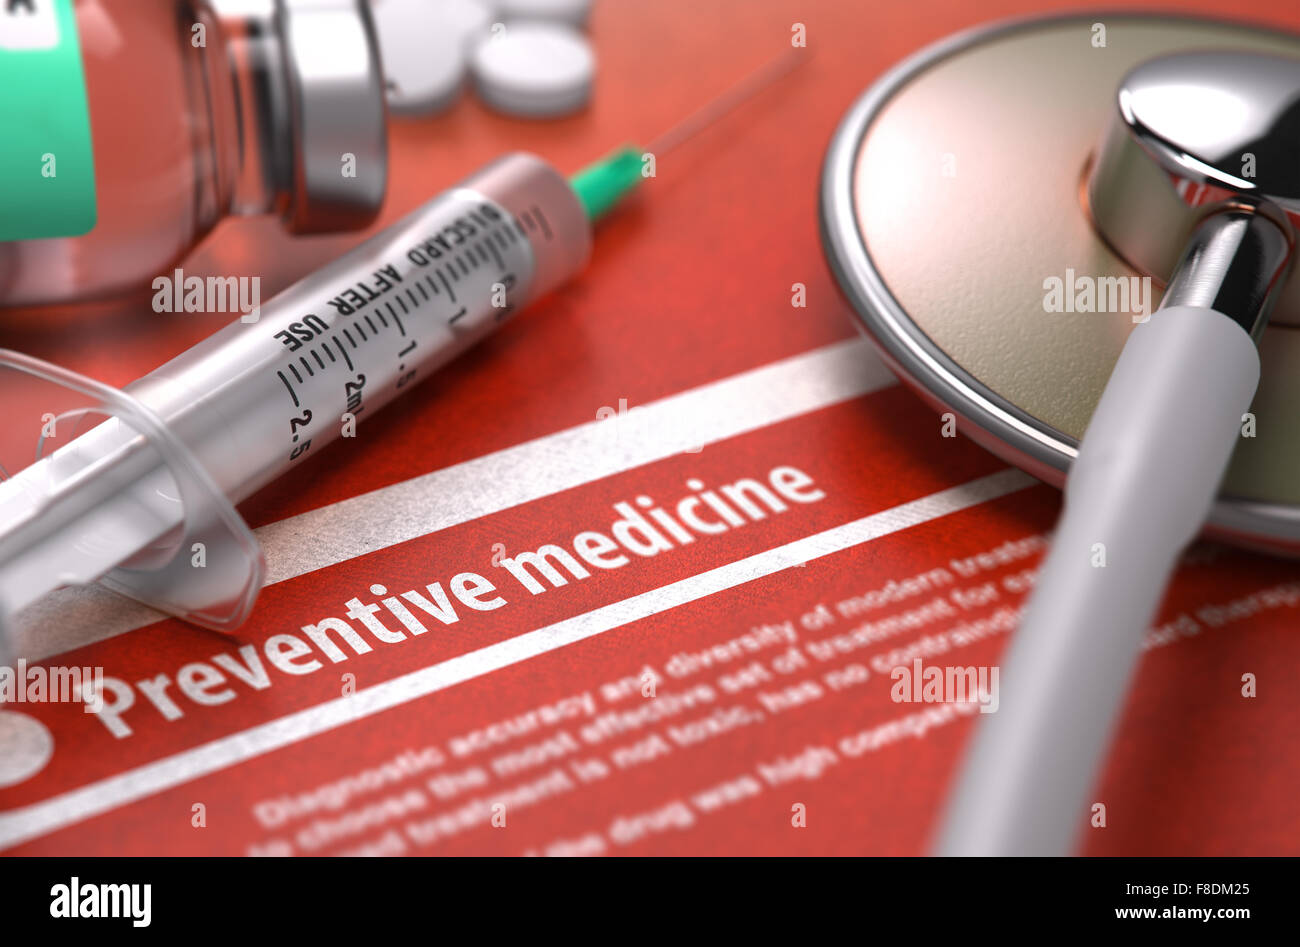 Preventive Medicine. Medical Concept. Stock Photo